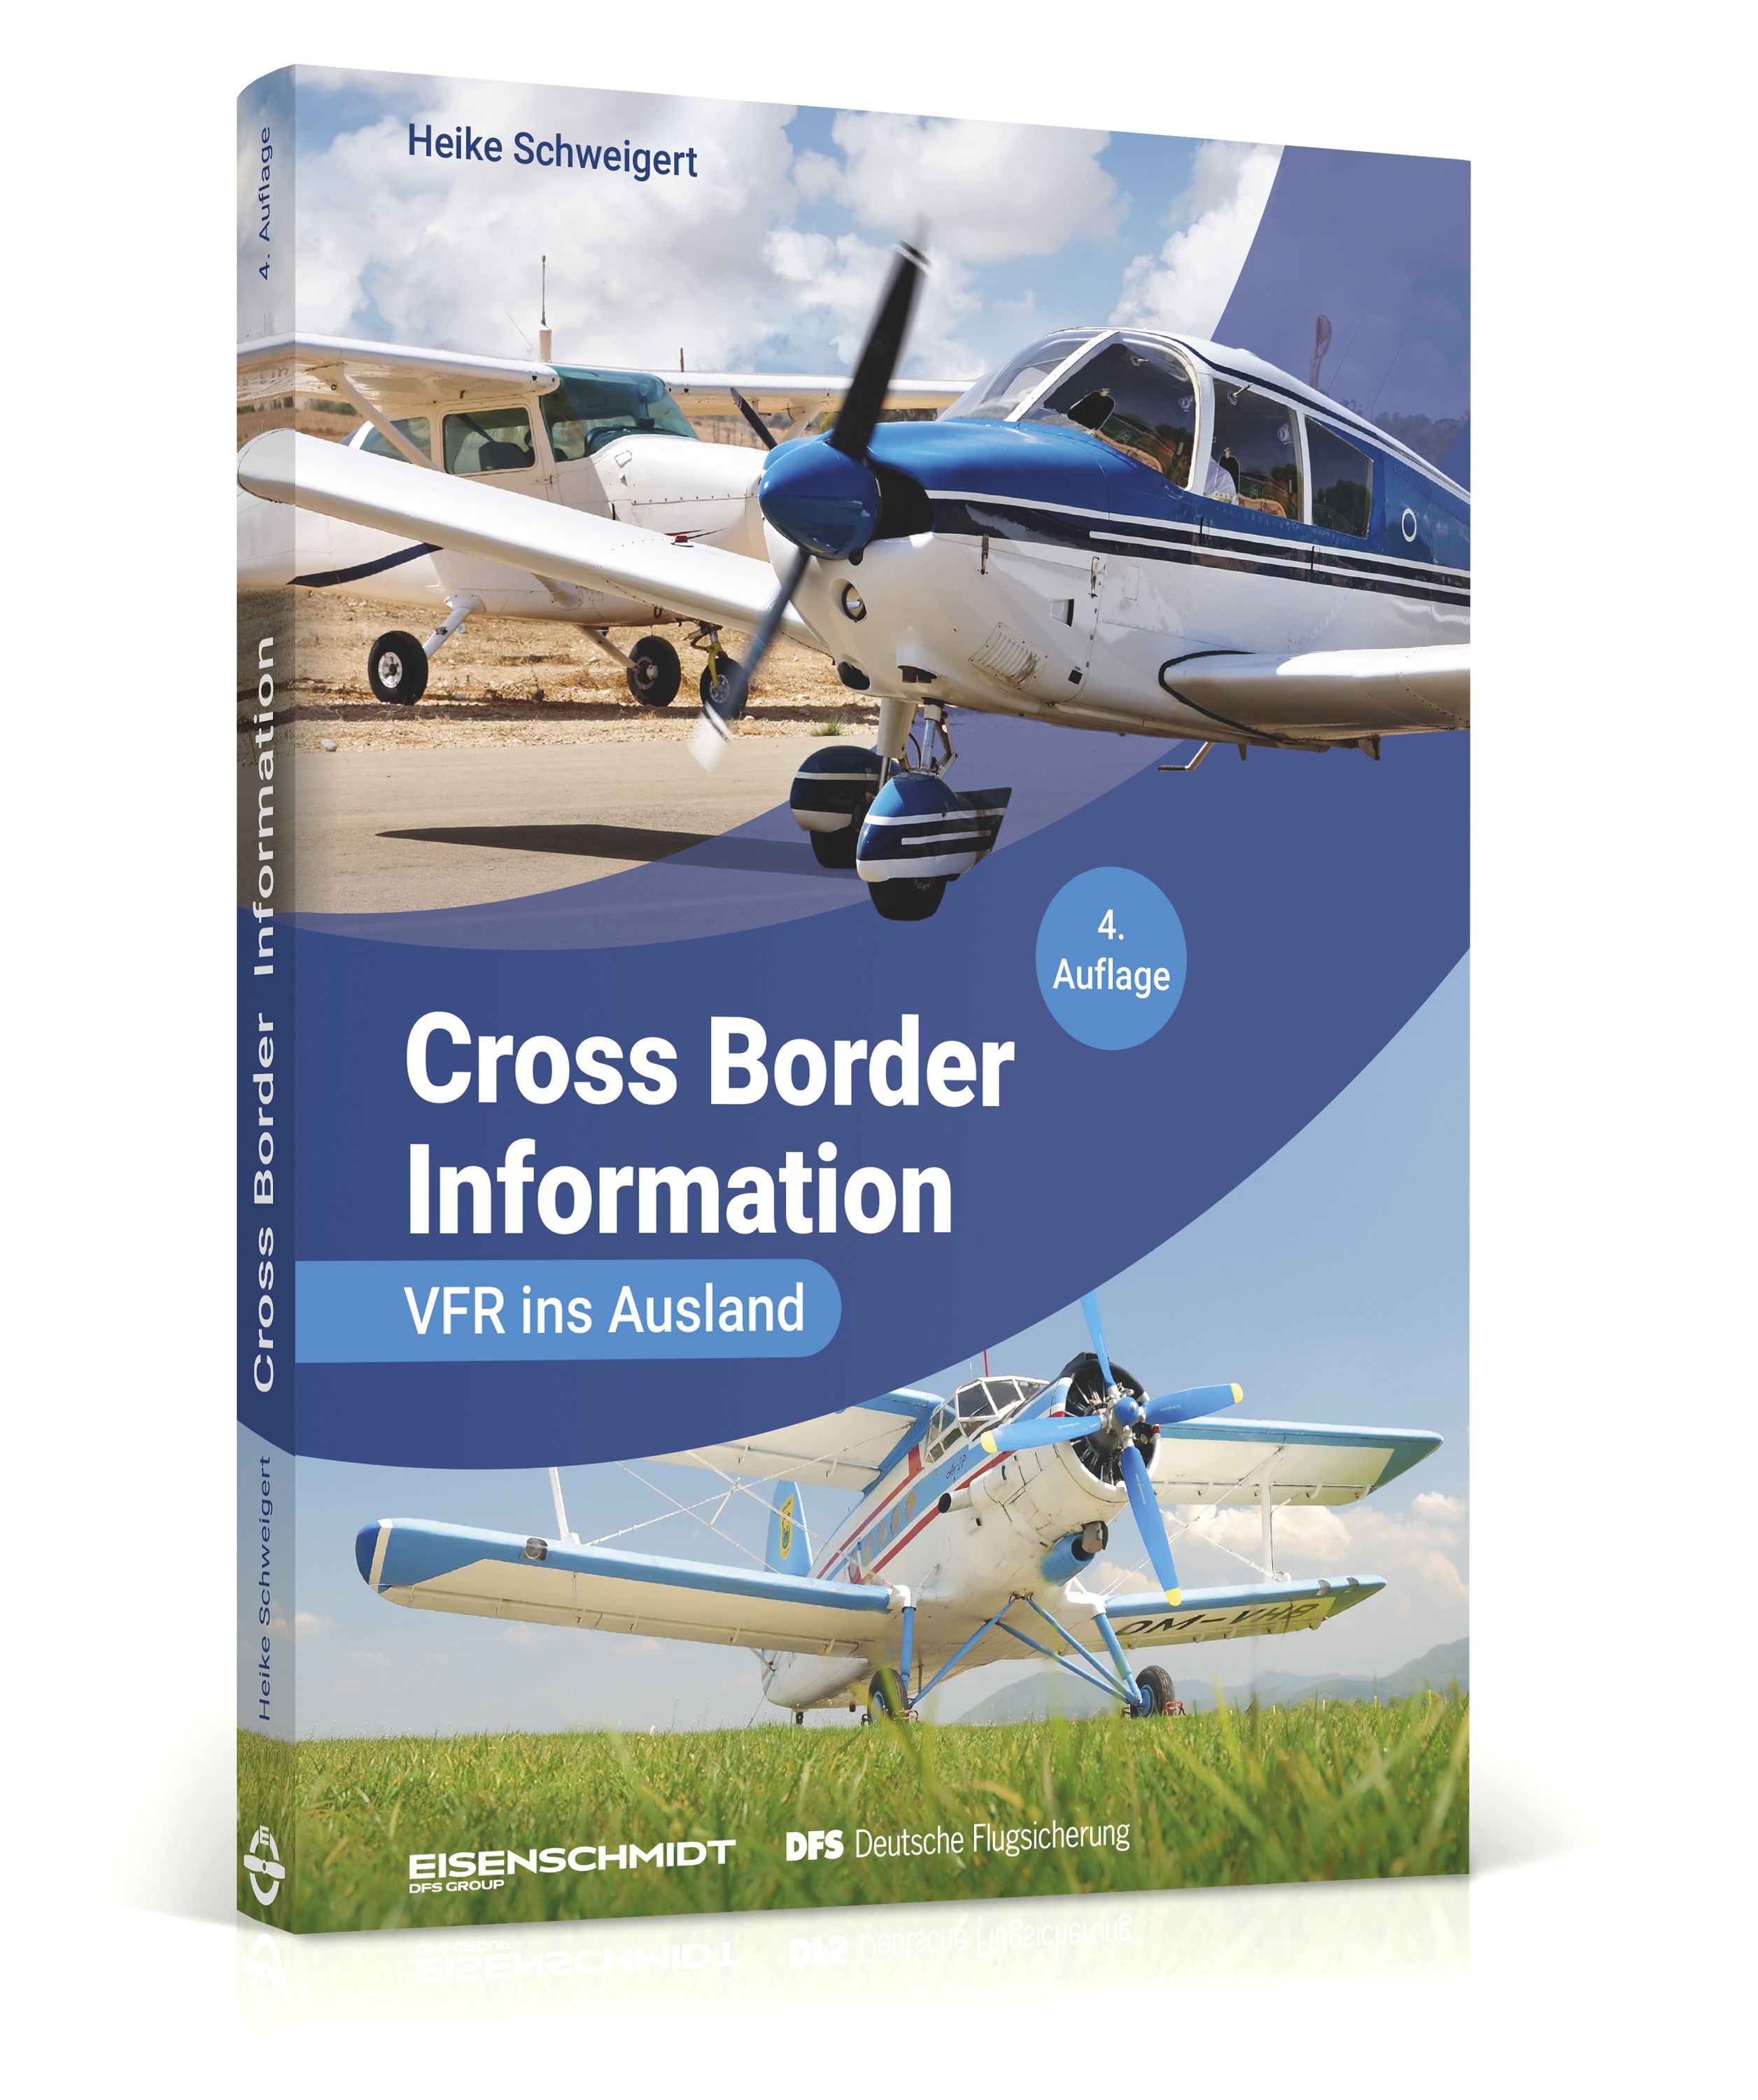 Cross Border Information für VFR-Flüge ins Ausland